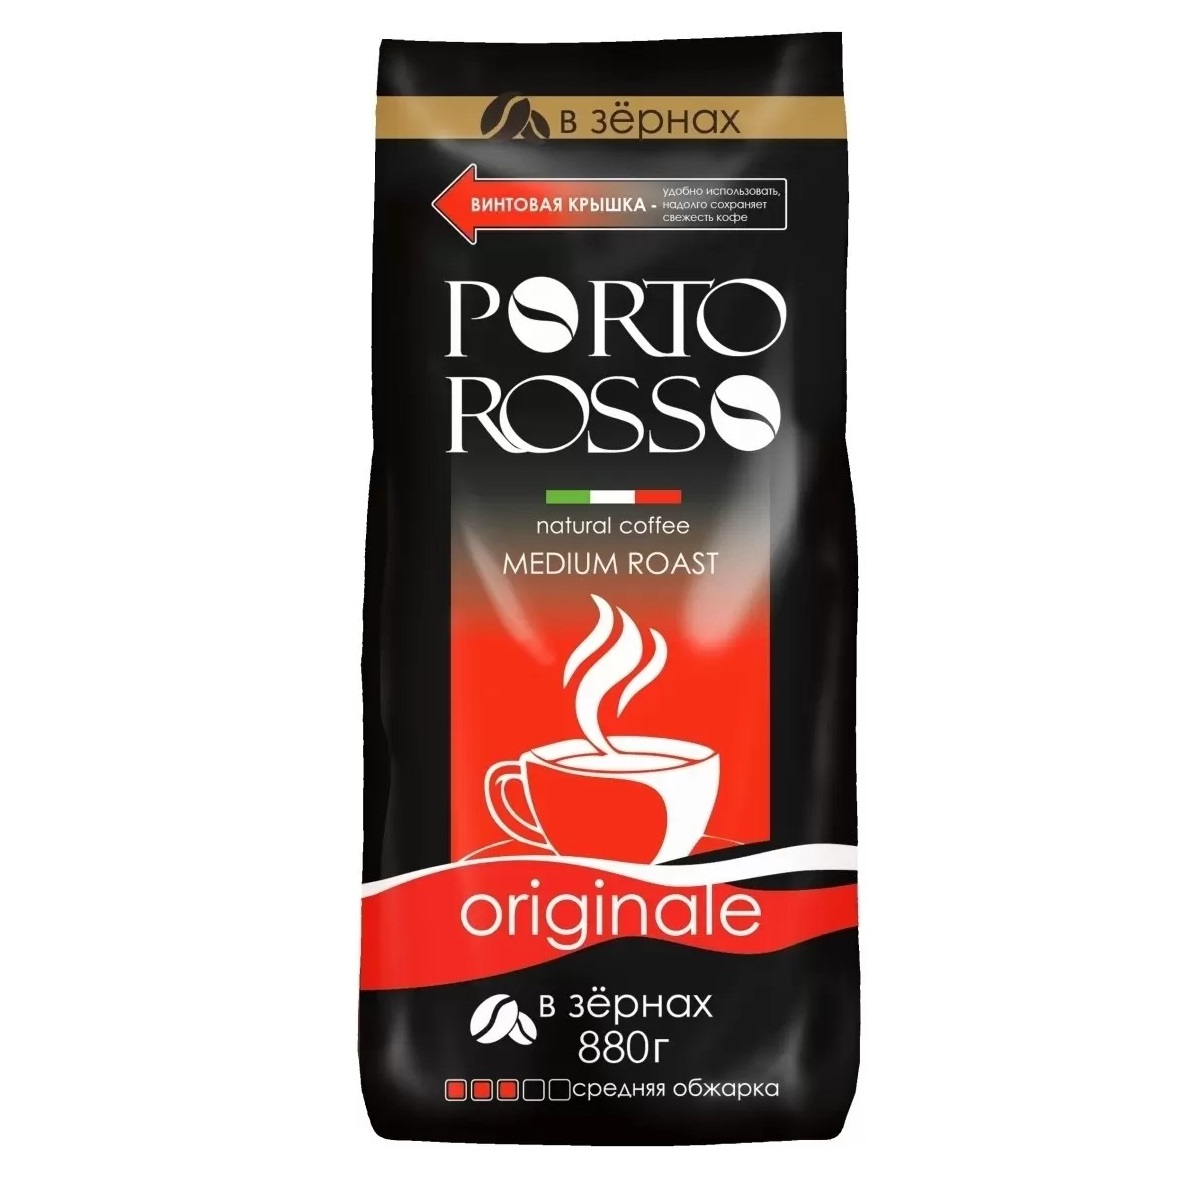 Кофе Porto Rosso в зернах Originale 880г кофе в зернах porto rosso originale 220 г